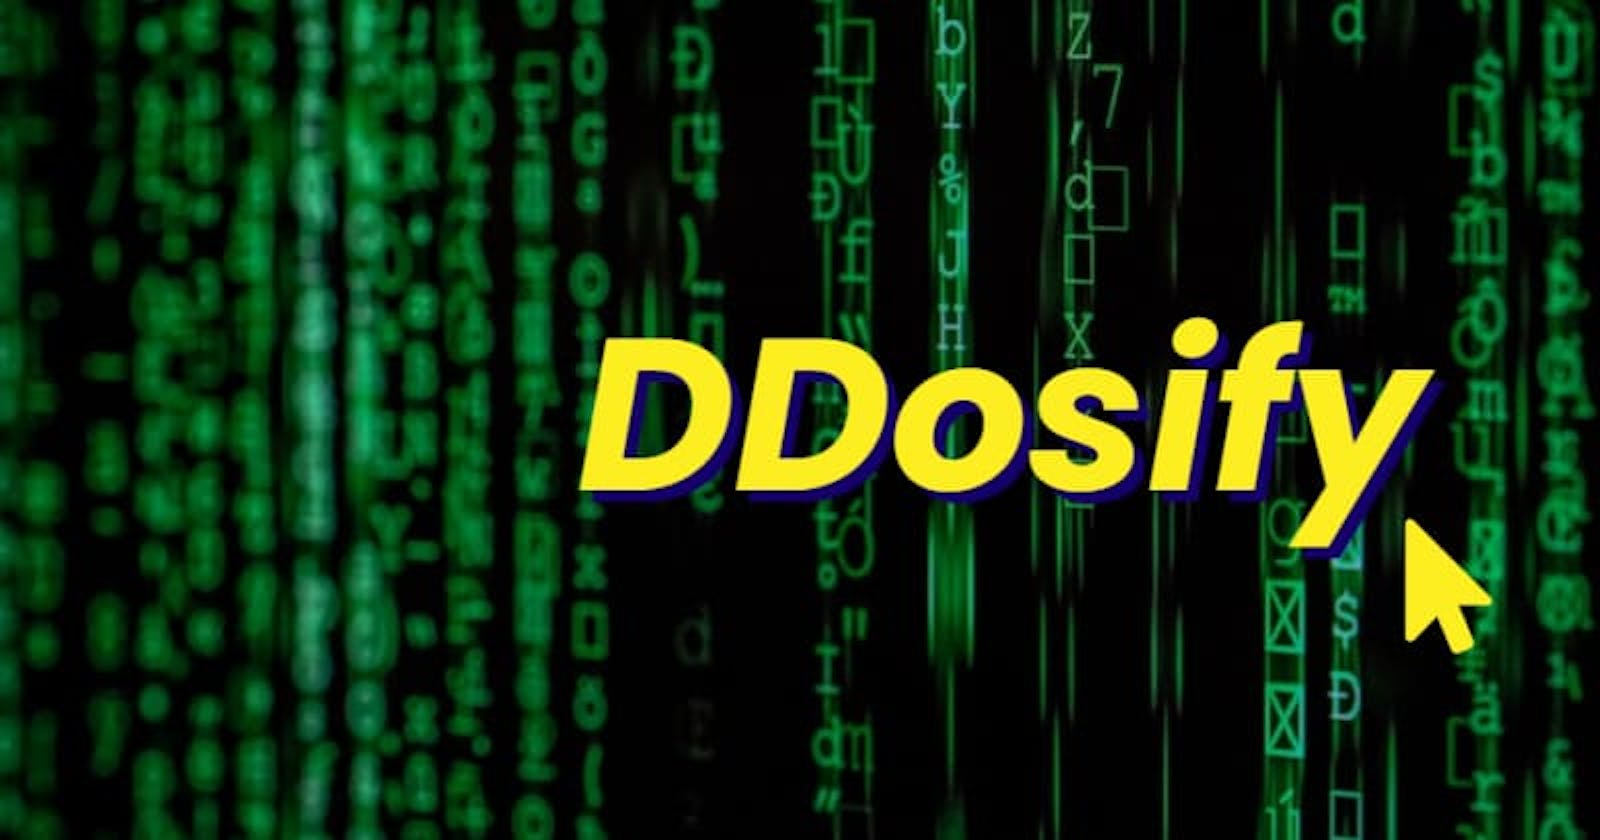 Ddosify : High-performance load testing tool